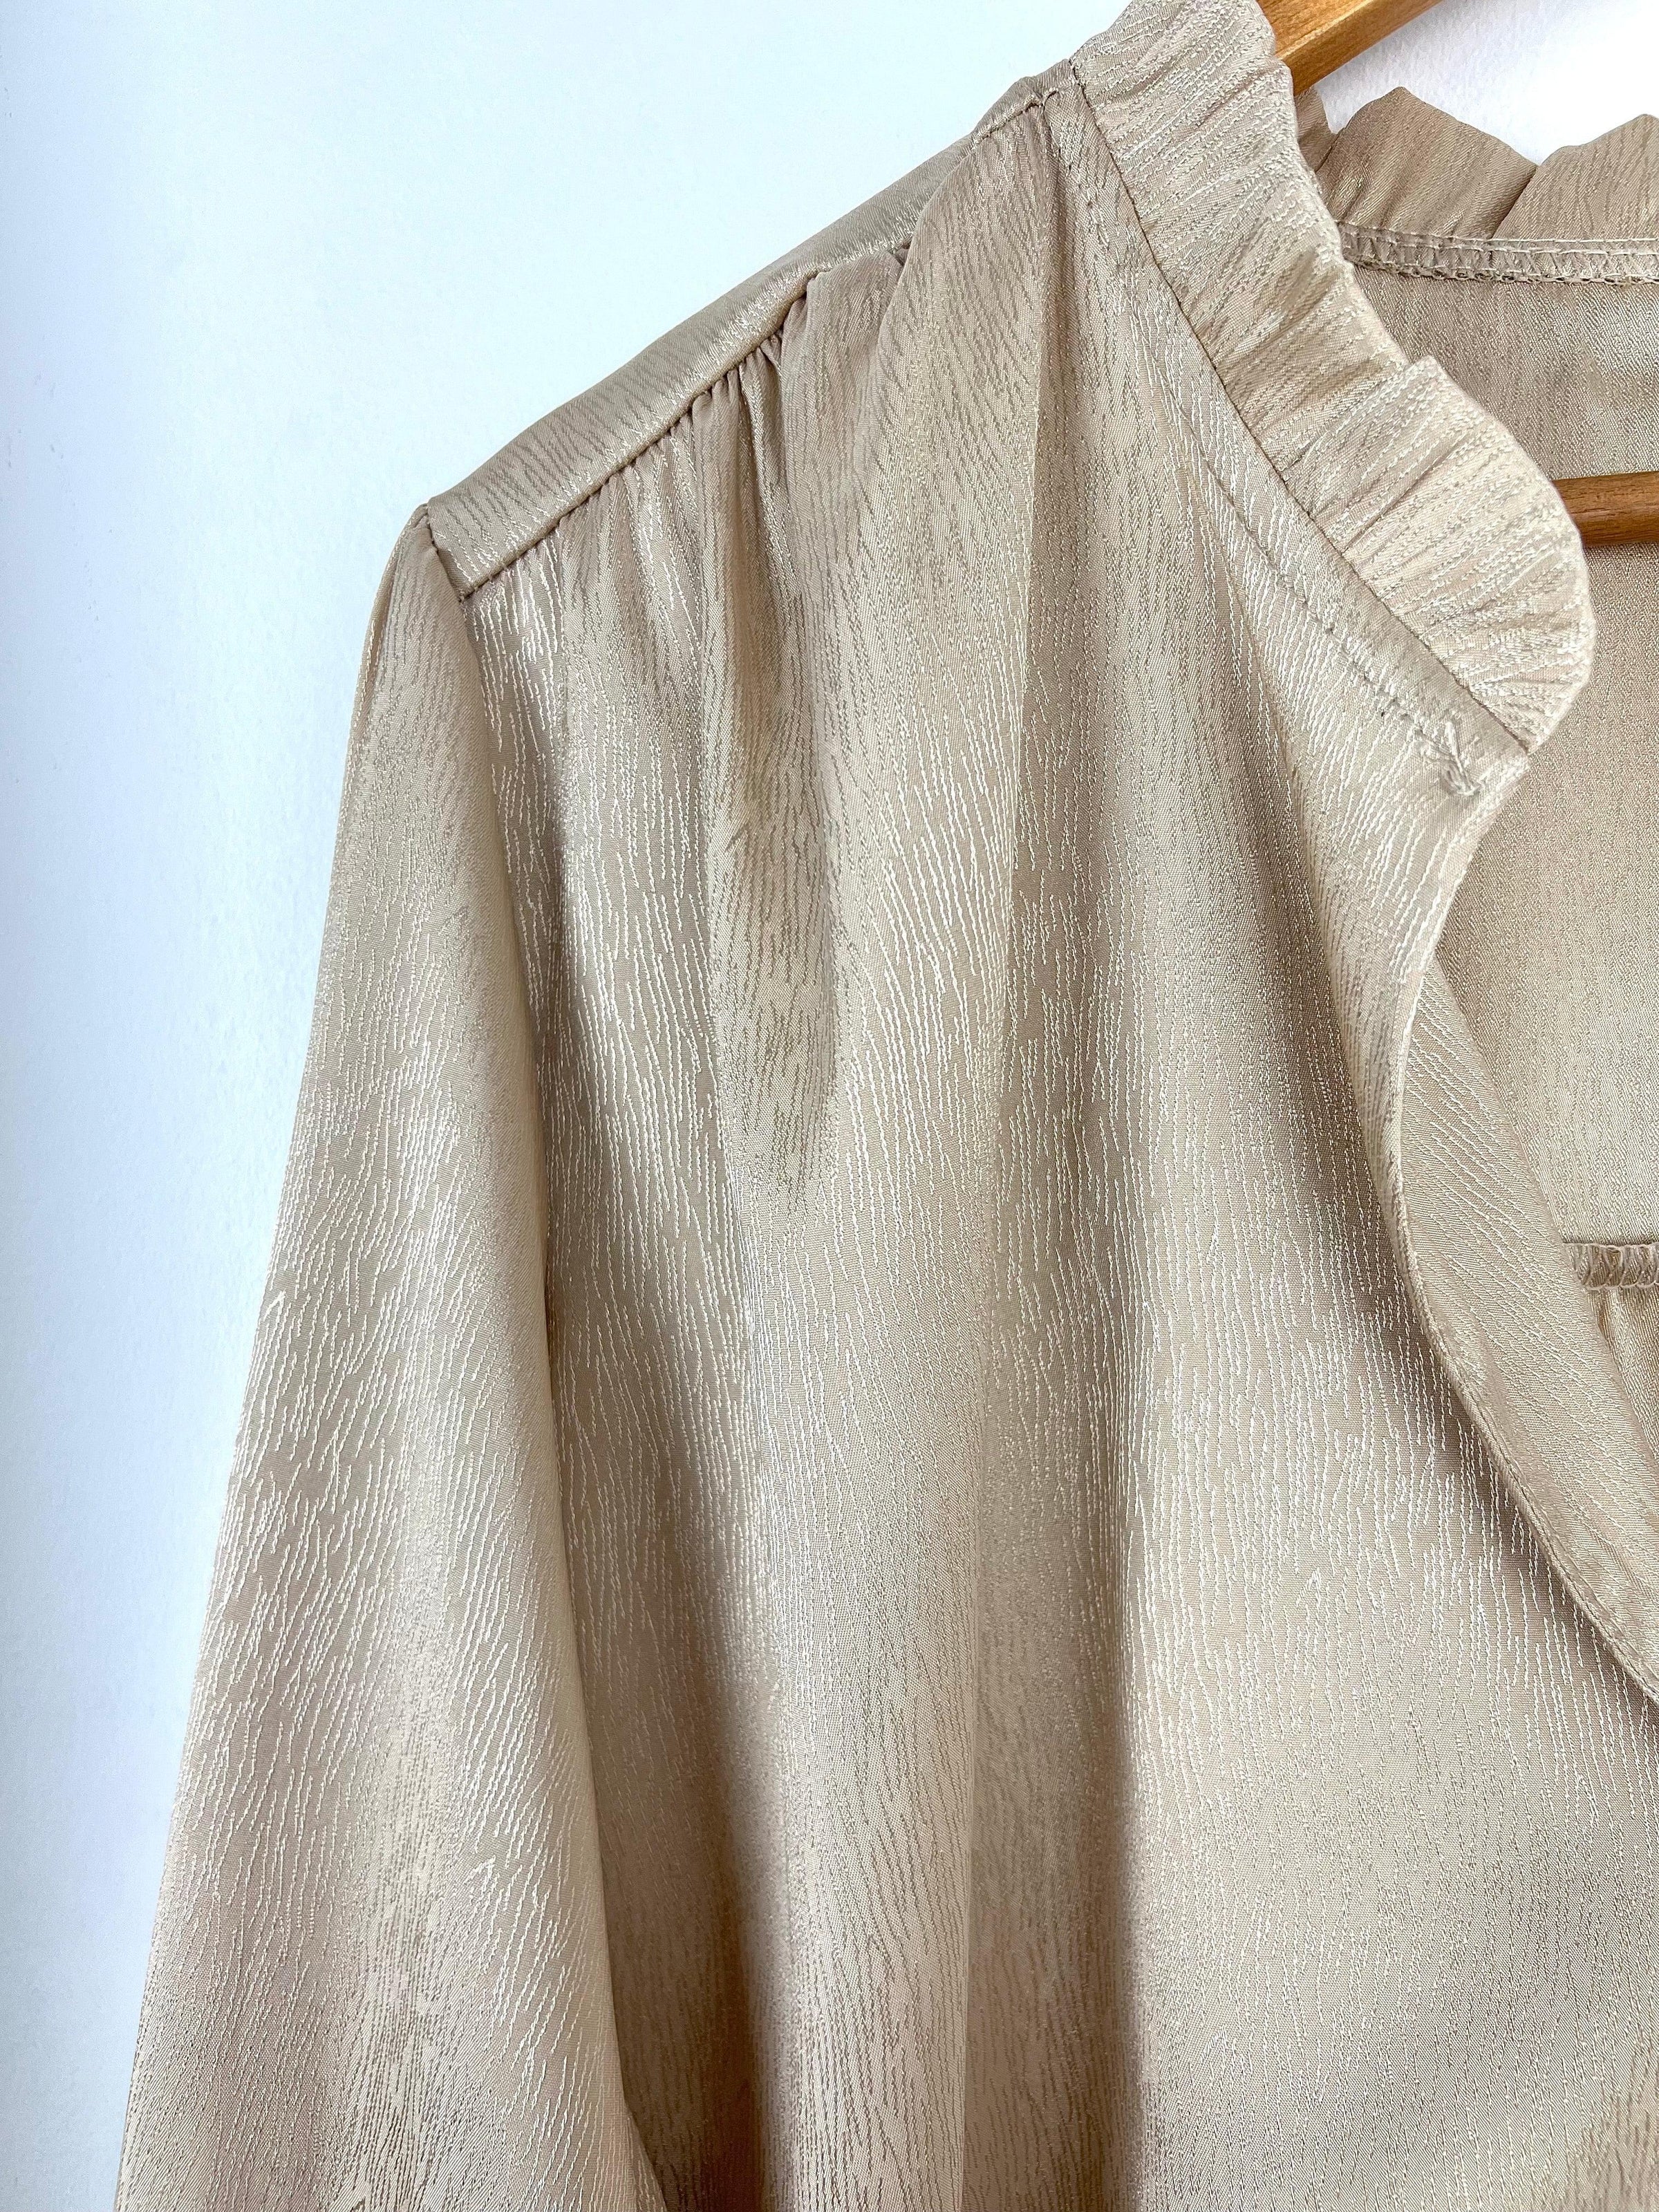 La chemise beige avec volants est un classique de la garde-robe féminine. Elle est à la fois élégante, féminine et versatile. Elle peut être portée pour toutes les occasions, du quotidien au travail en passant par les occasions spéciales.